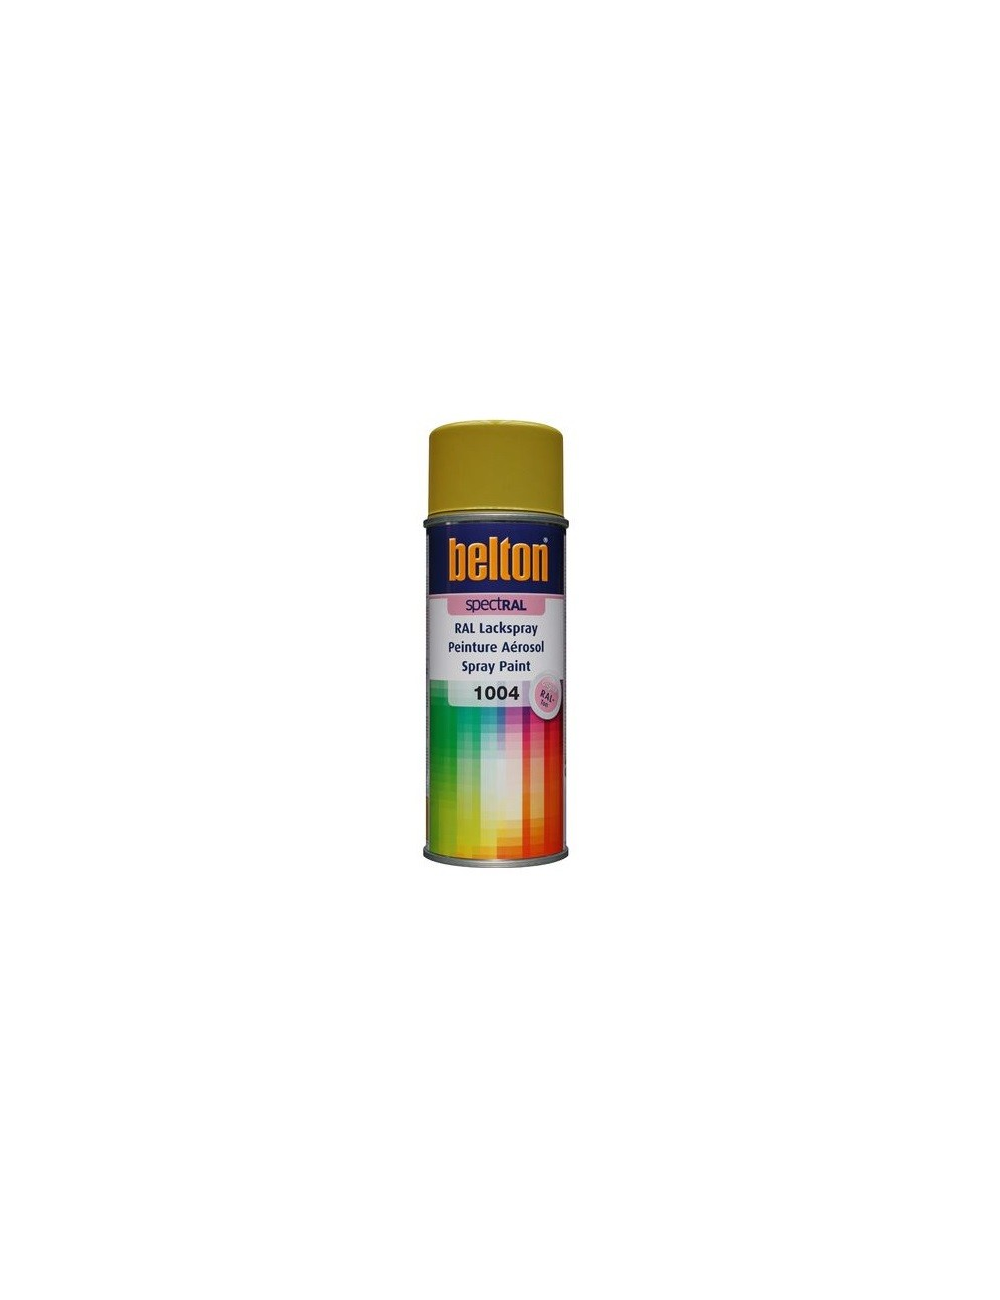 Bombe de peinture - Haute température - Résistance jusqu'à 700C - Noir  brillant - 400ml - Achetez en ligne